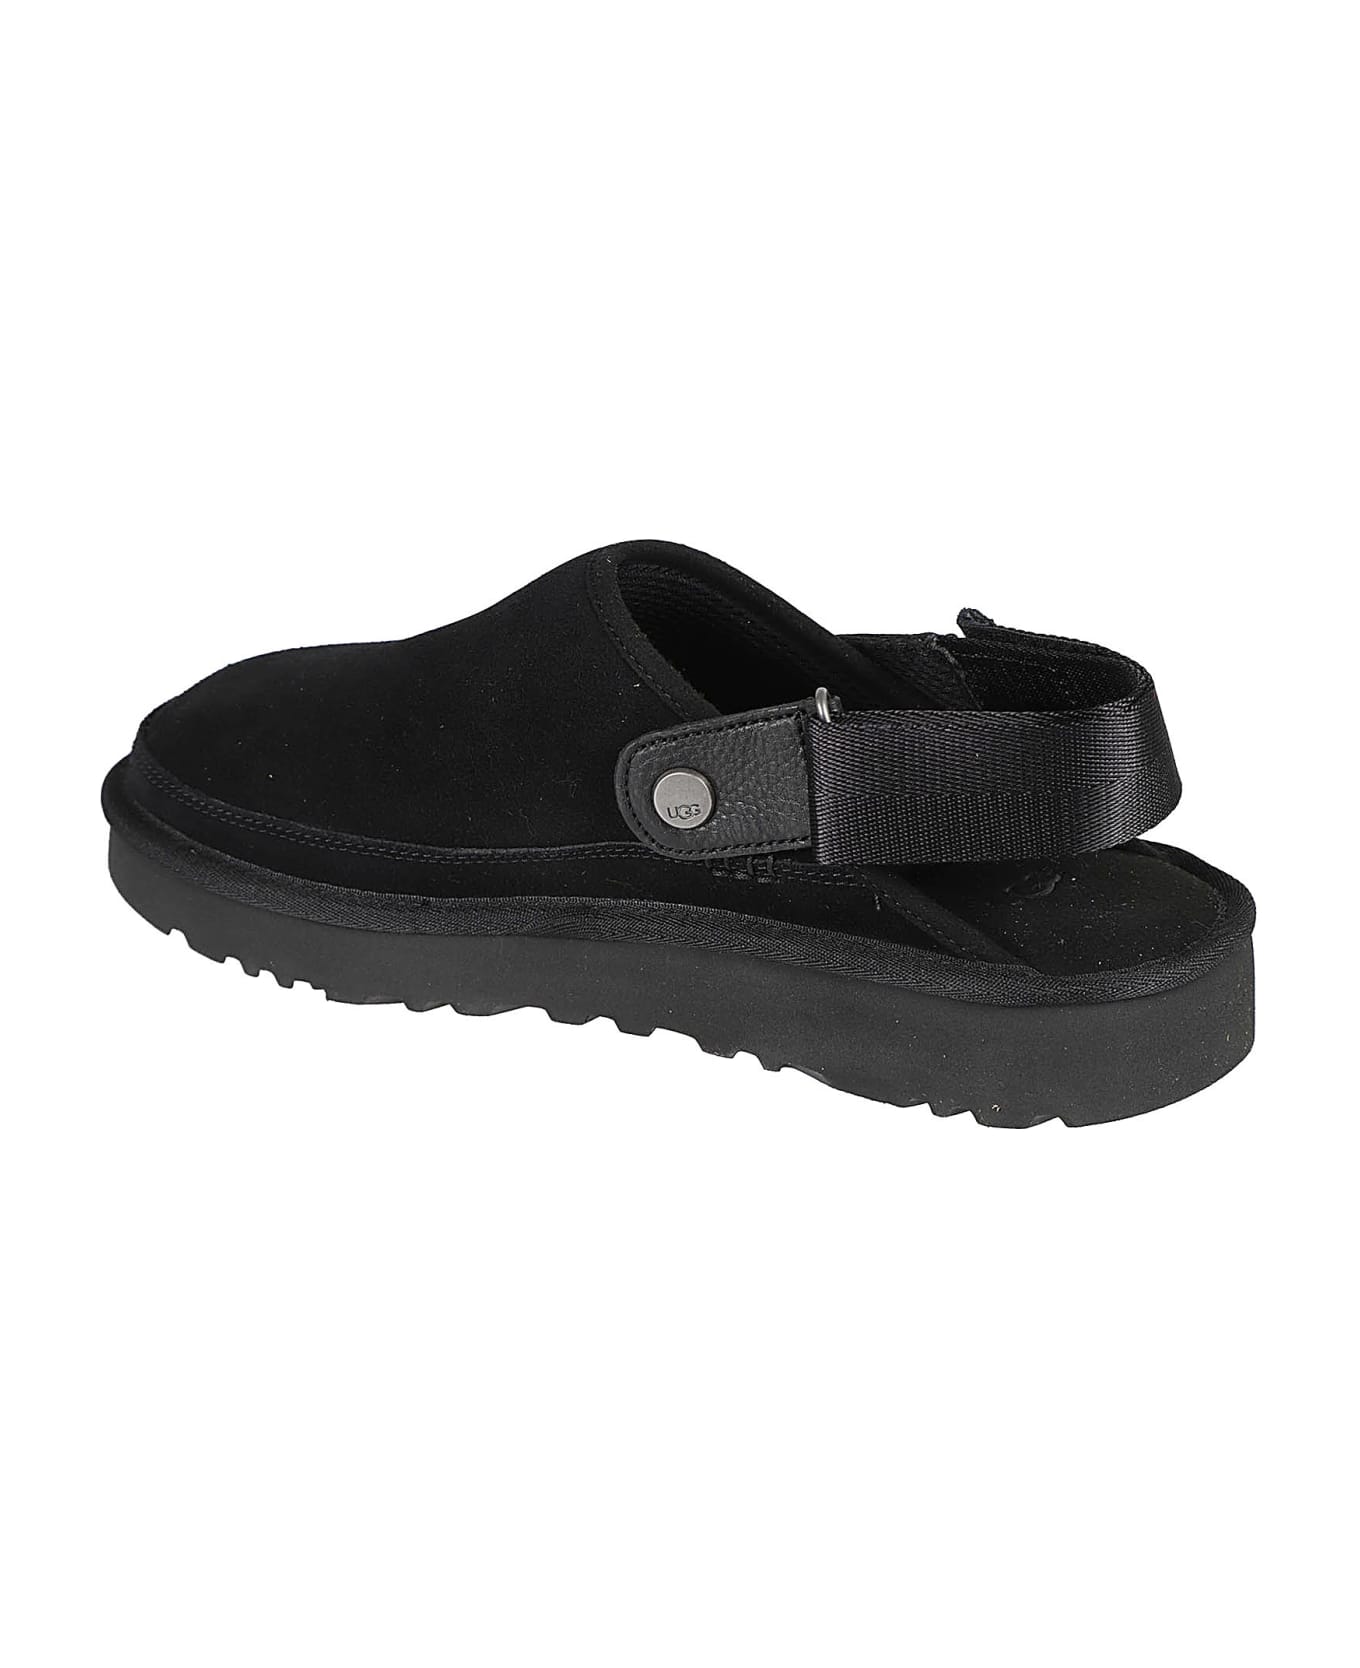 UGG Golden Coast Clog Sandals - Black